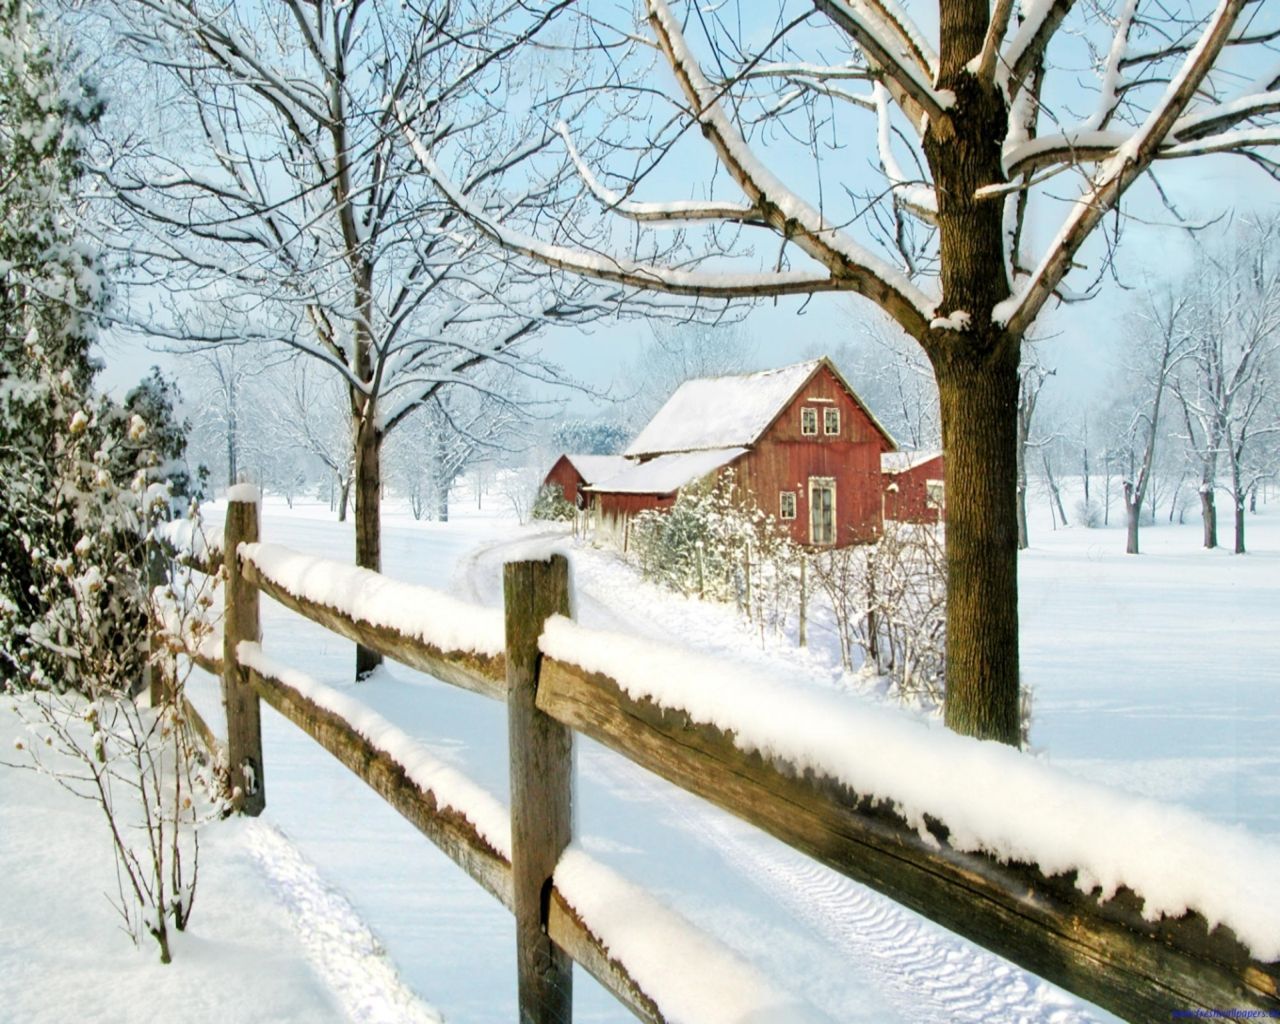 Winter farm. Winter scenery, Winter landscape, Winter picture